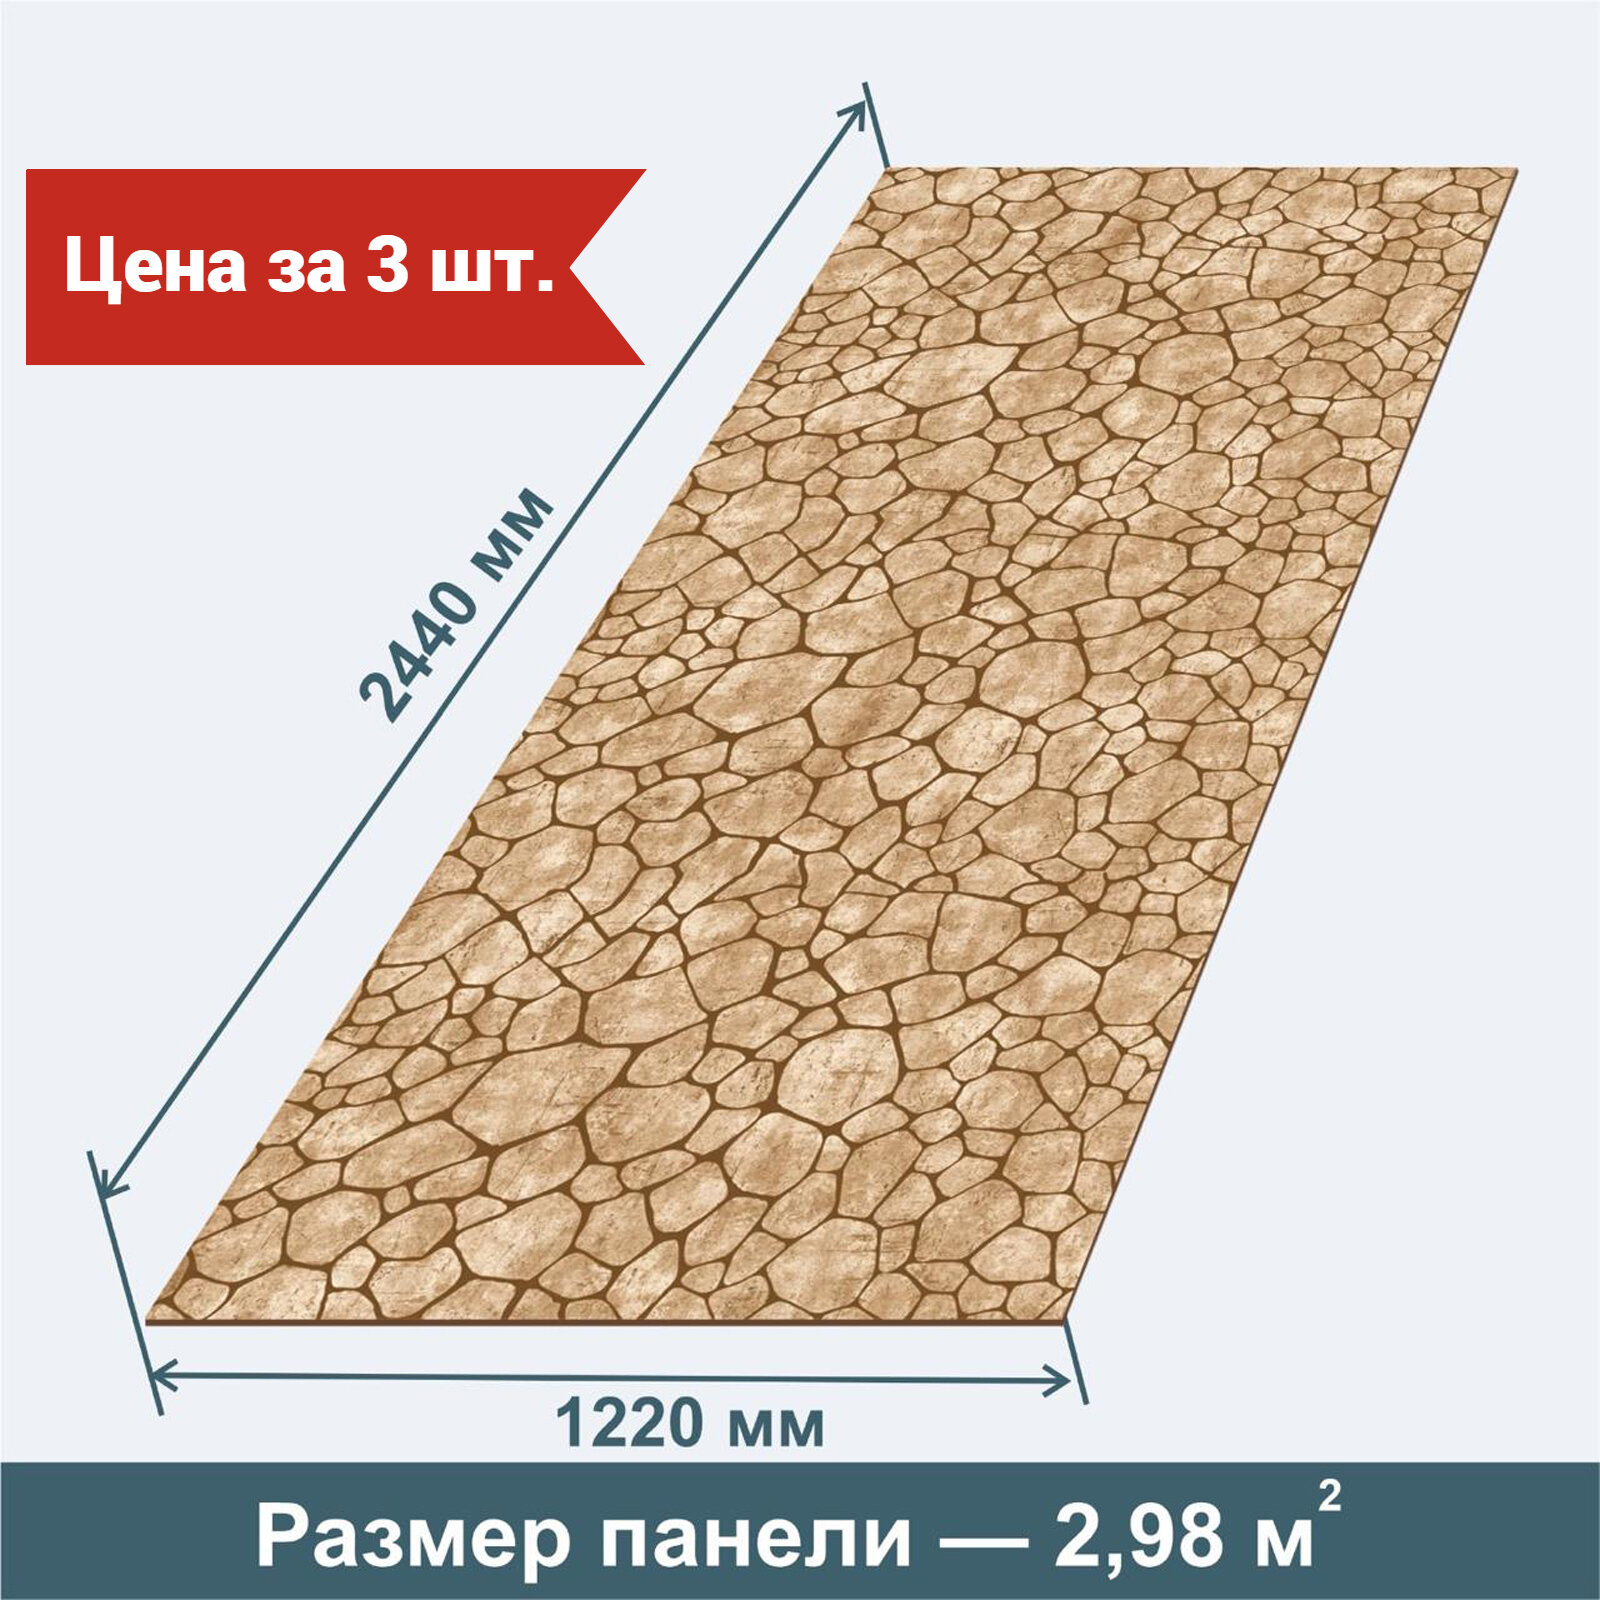 Стеновая Панель из МДФ RashDecor Флексокамень Песочный 2440х1220х3,2 мм, 3 шт в упаковке